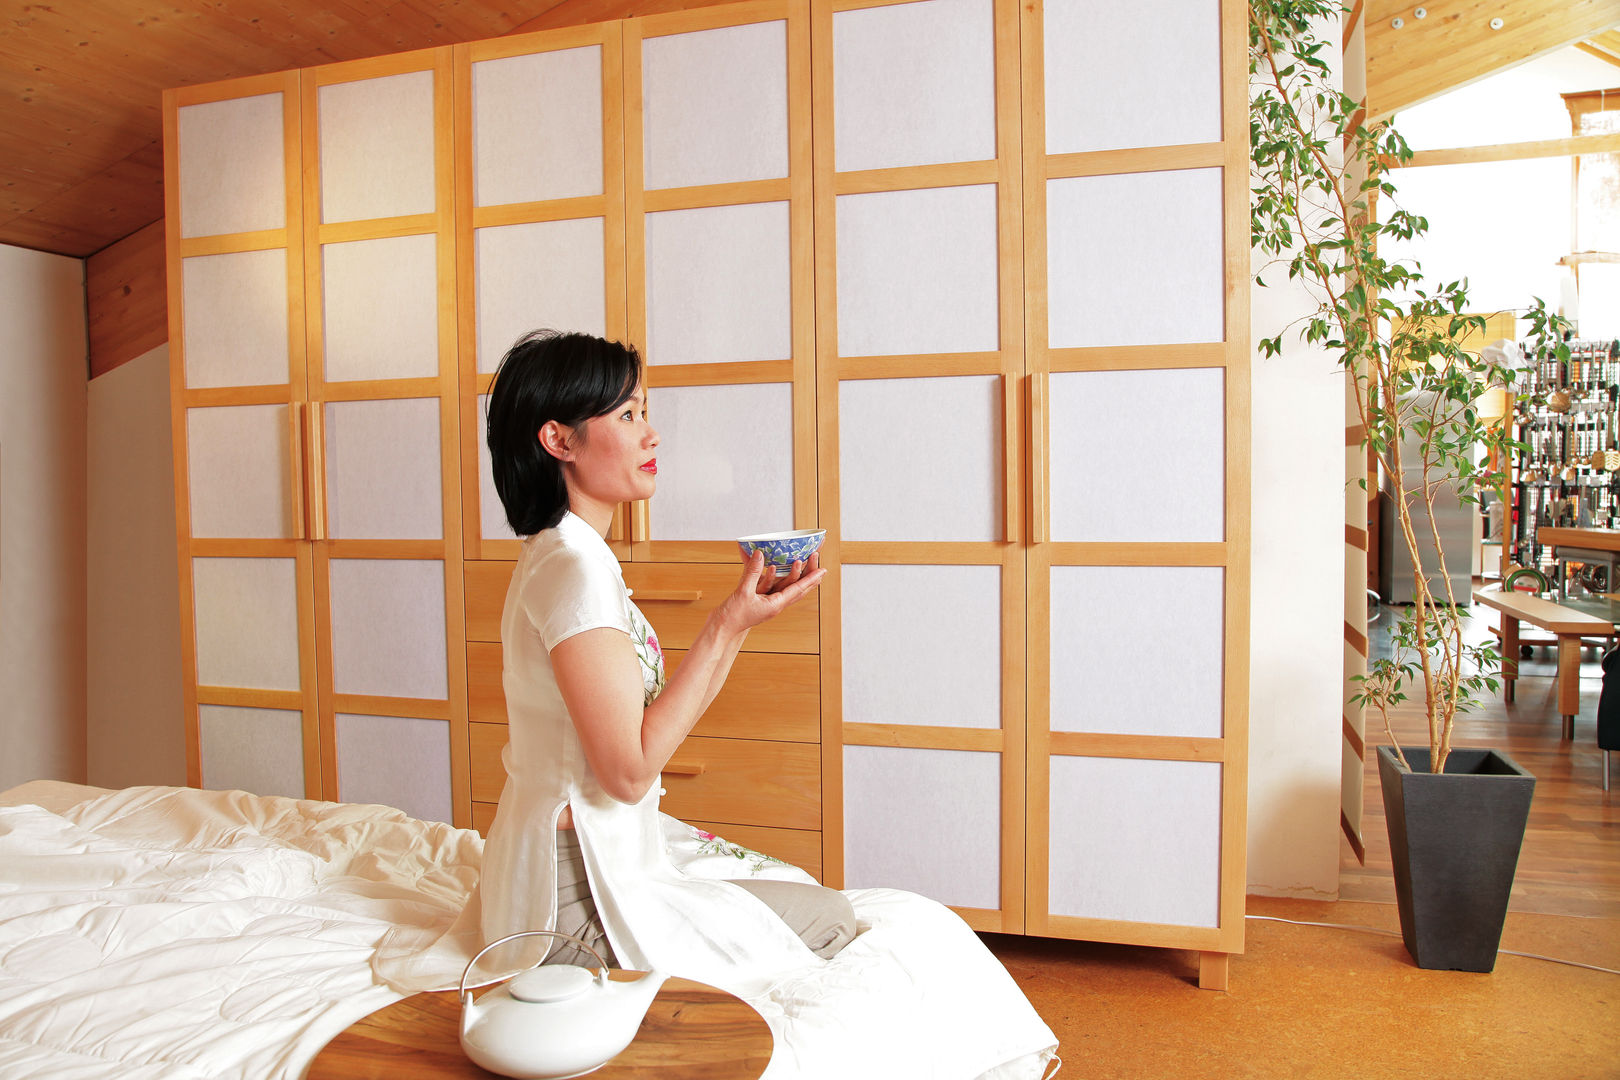 Massivholzschlafzimmer mit japanischer Anmutung , die-moebelmacher gmbh die-moebelmacher gmbh Aziatische slaapkamers Garderobe- & ladekasten